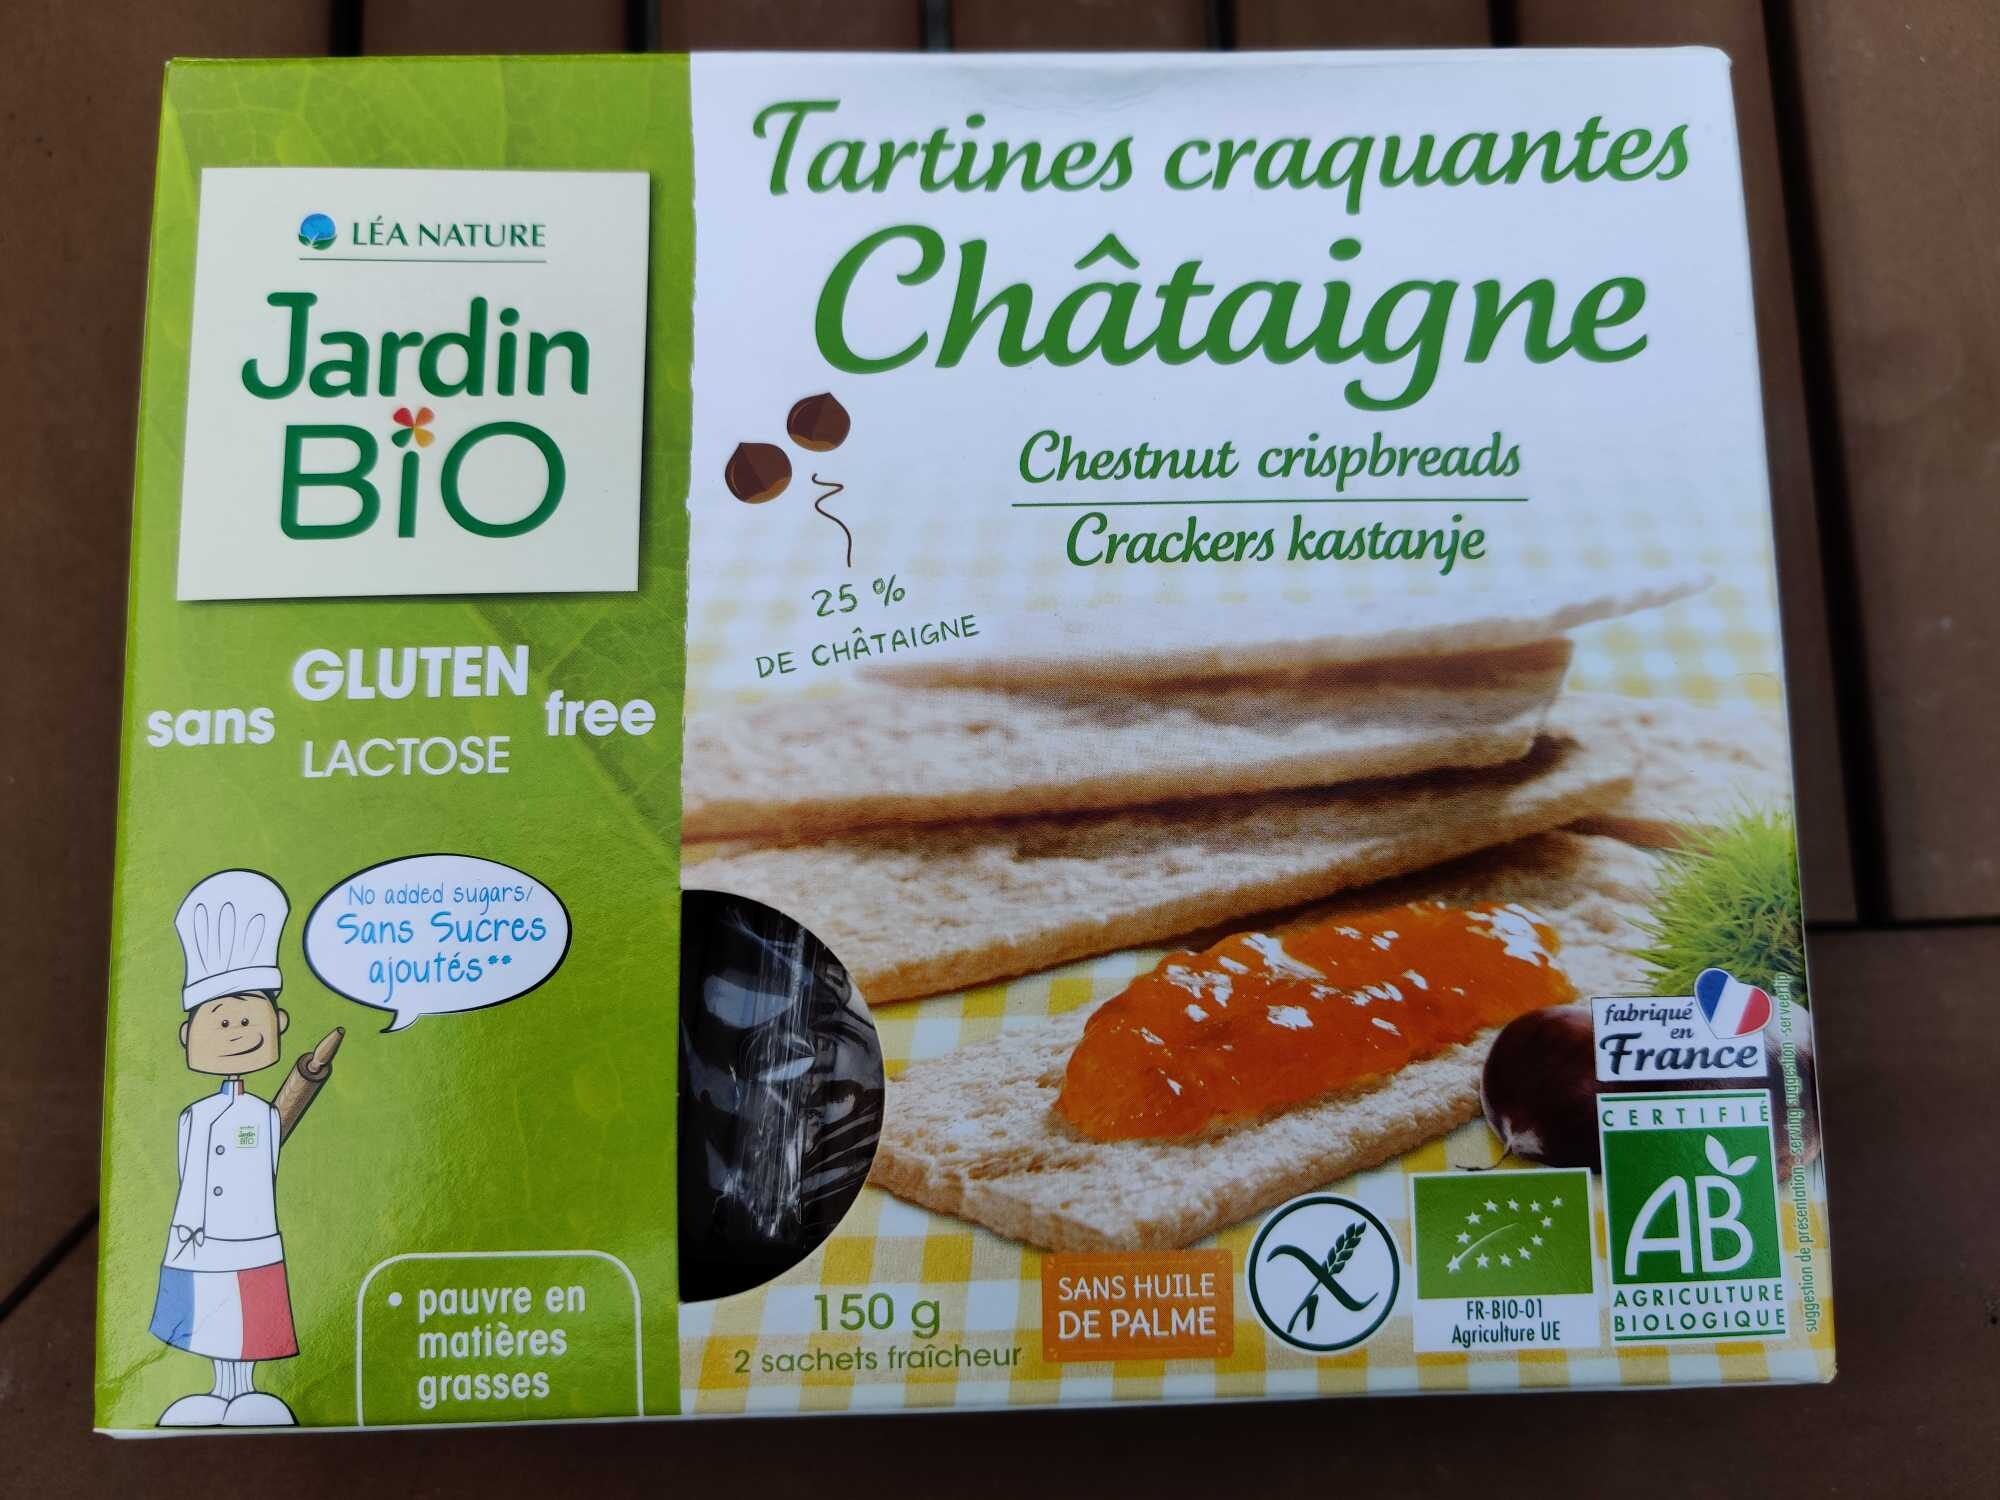 Tartines craquant es châtaigne - Tuote - fr